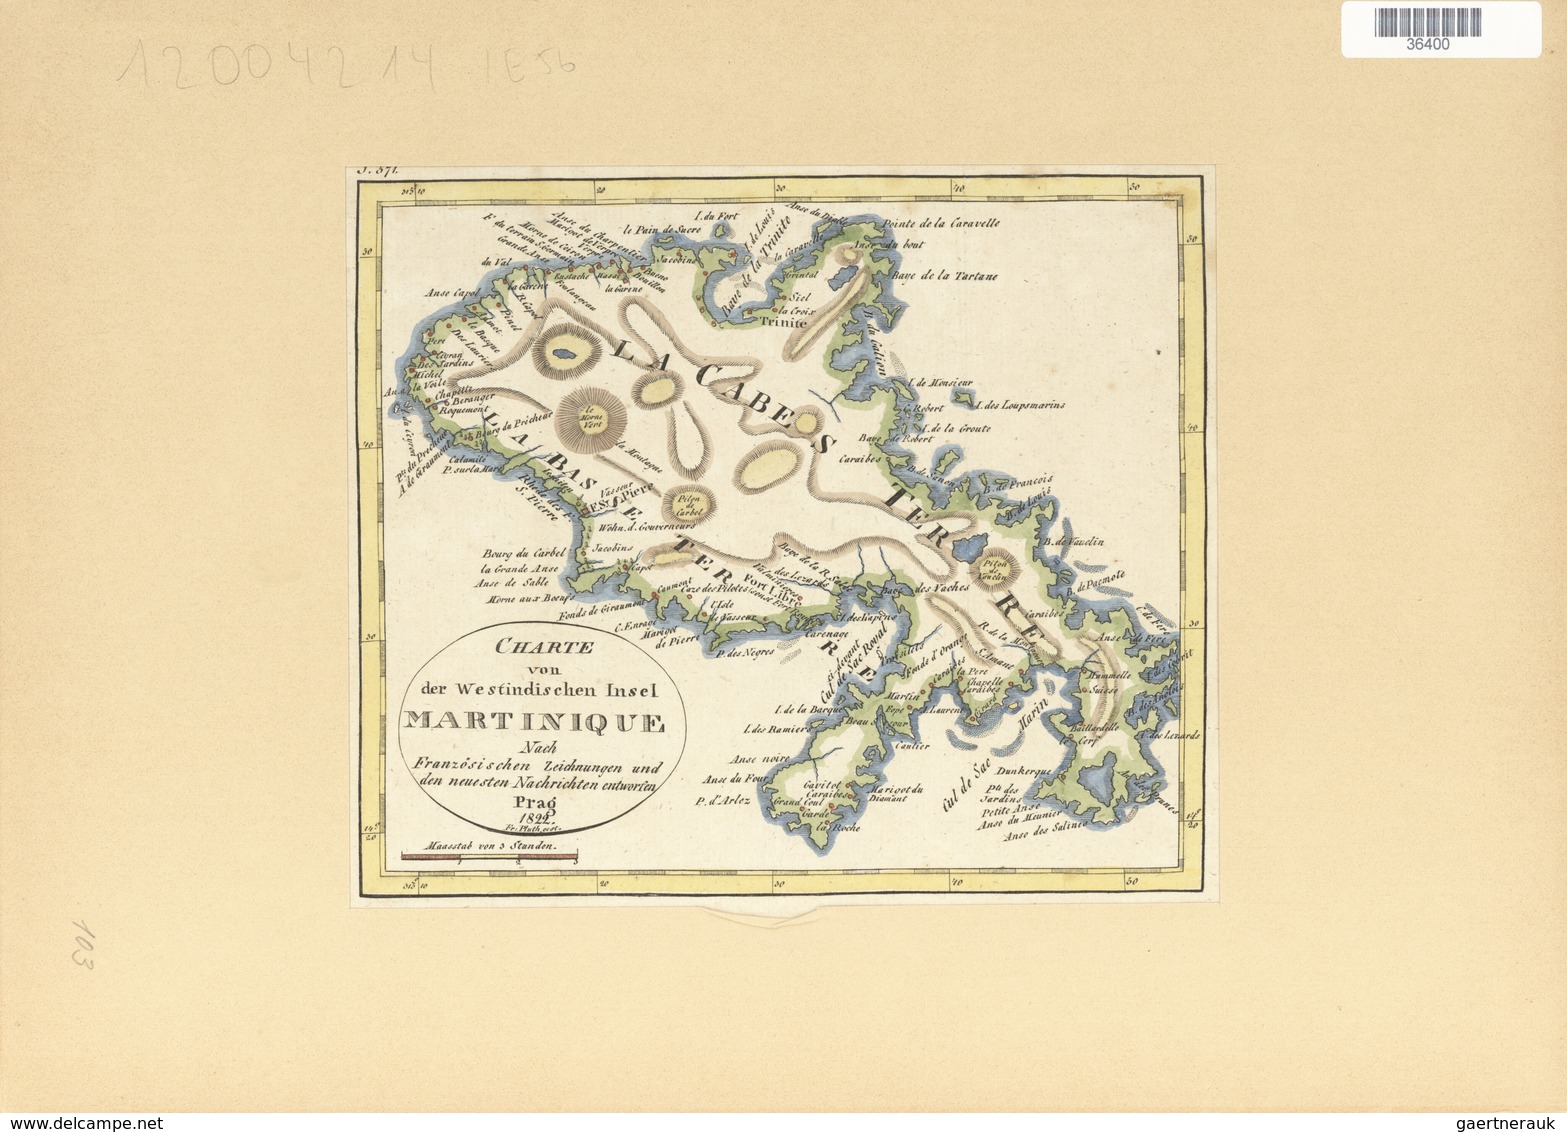 Landkarten Und Stiche: 1822. Map Of The Island Of Martinique, By One Fr. Pluth, From Prague In 1822. - Geografía